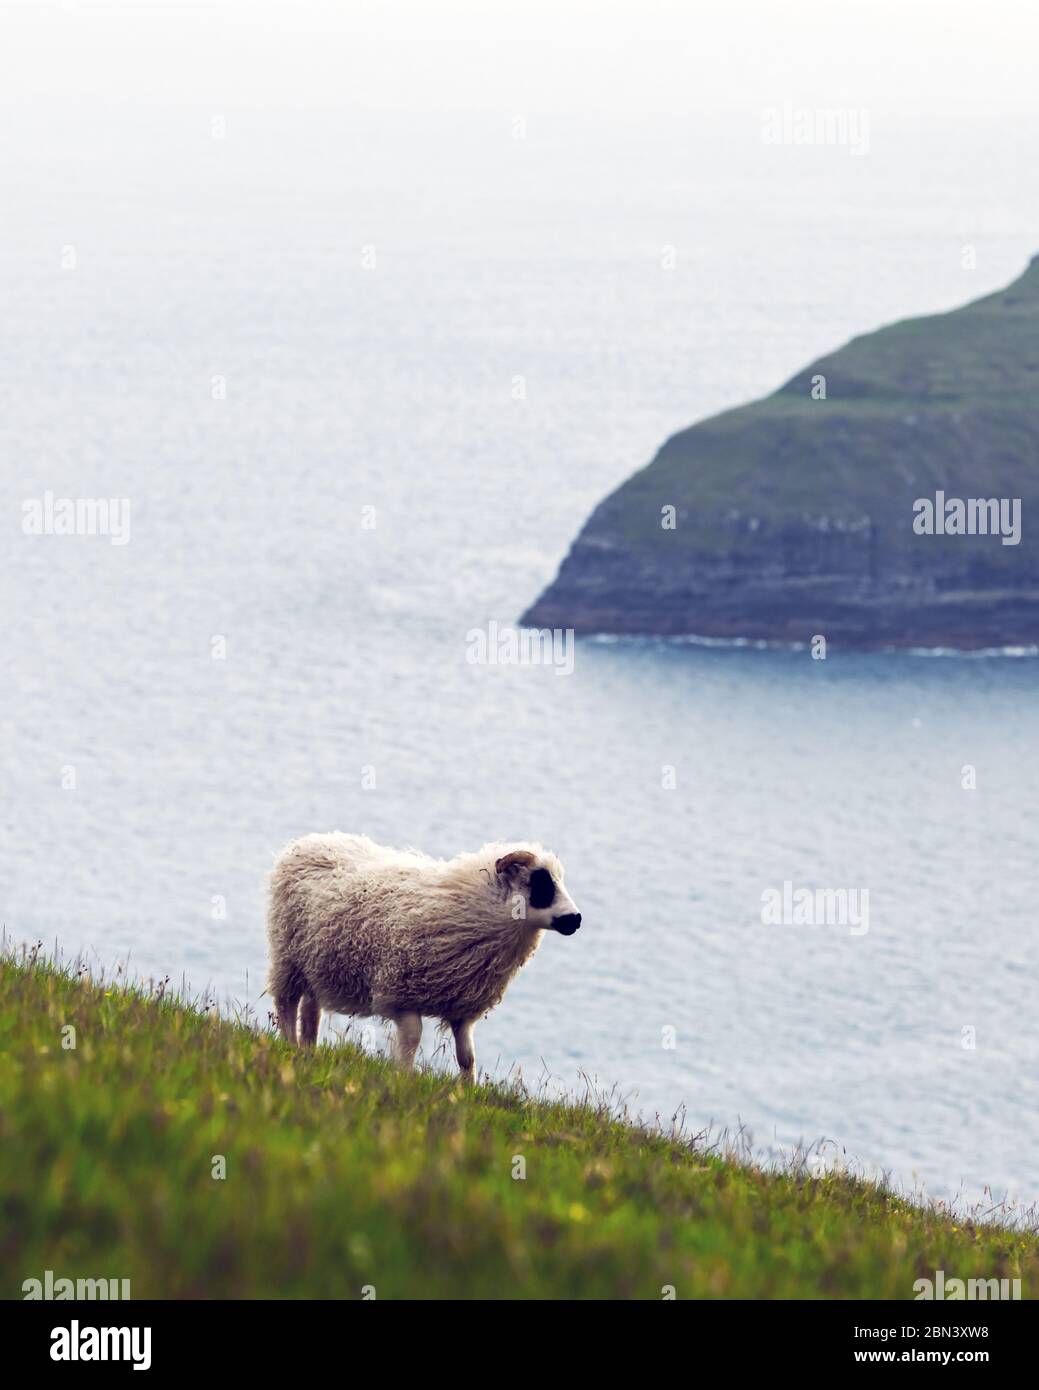 Vista mattutina sulle isole Faroe estive con pecore in primo piano. Isola di Streymoy, Danimarca. Fotografia di paesaggio Foto Stock